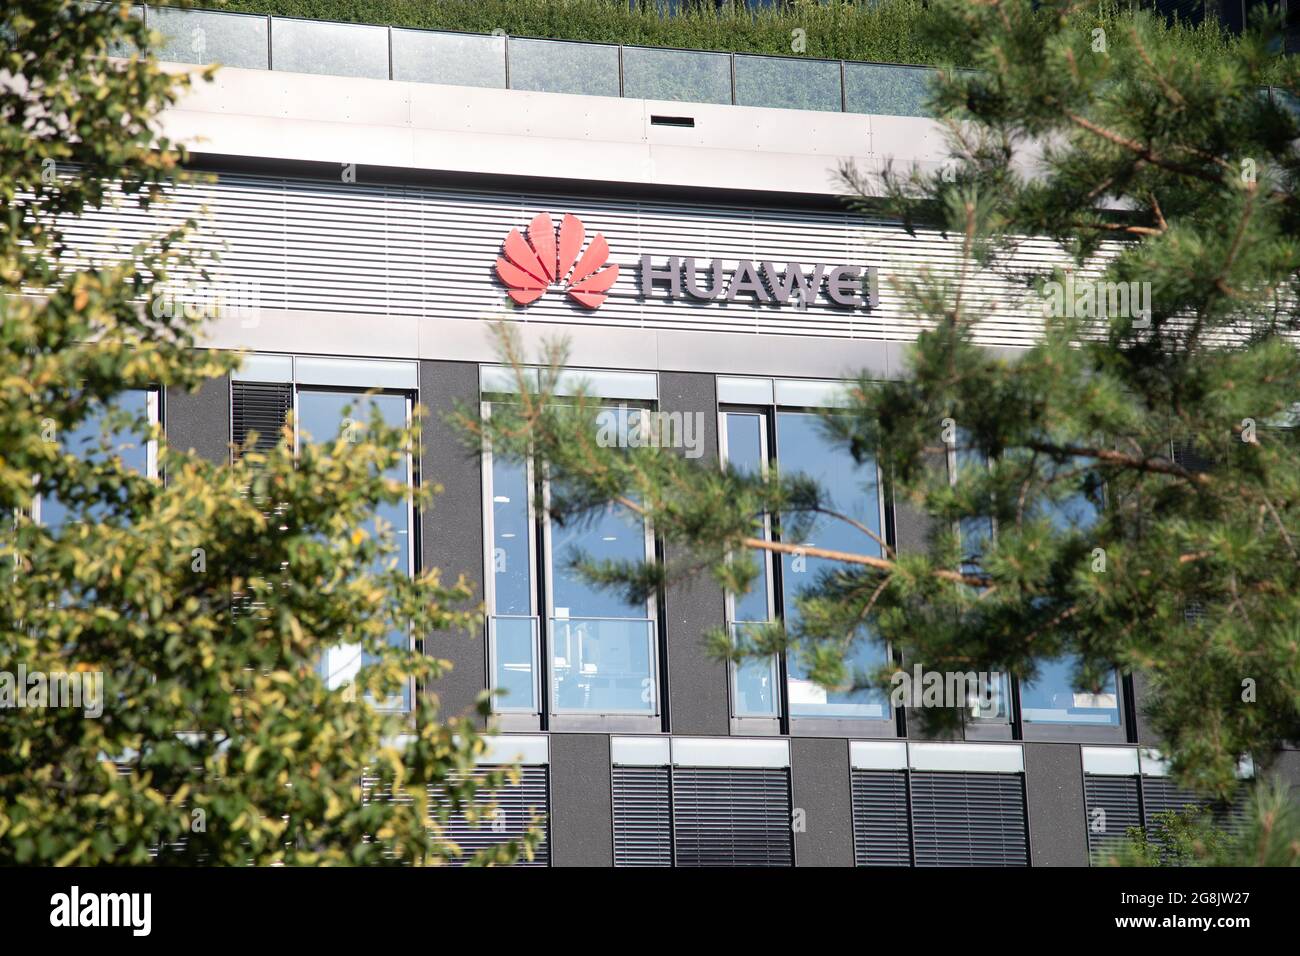 Büros vom größten Smartphone Hersteller der Welt Huawei Technologies Co. Ltd. in München. Huawei steht wegen der Nähe zum chinesischen Staat und der Partei in der Kritik. -- Bureaus of Huawei seen in Munich. (Photo by Alexander Pohl/Sipa USA) Credit: Sipa USA/Alamy Live News Stock Photo